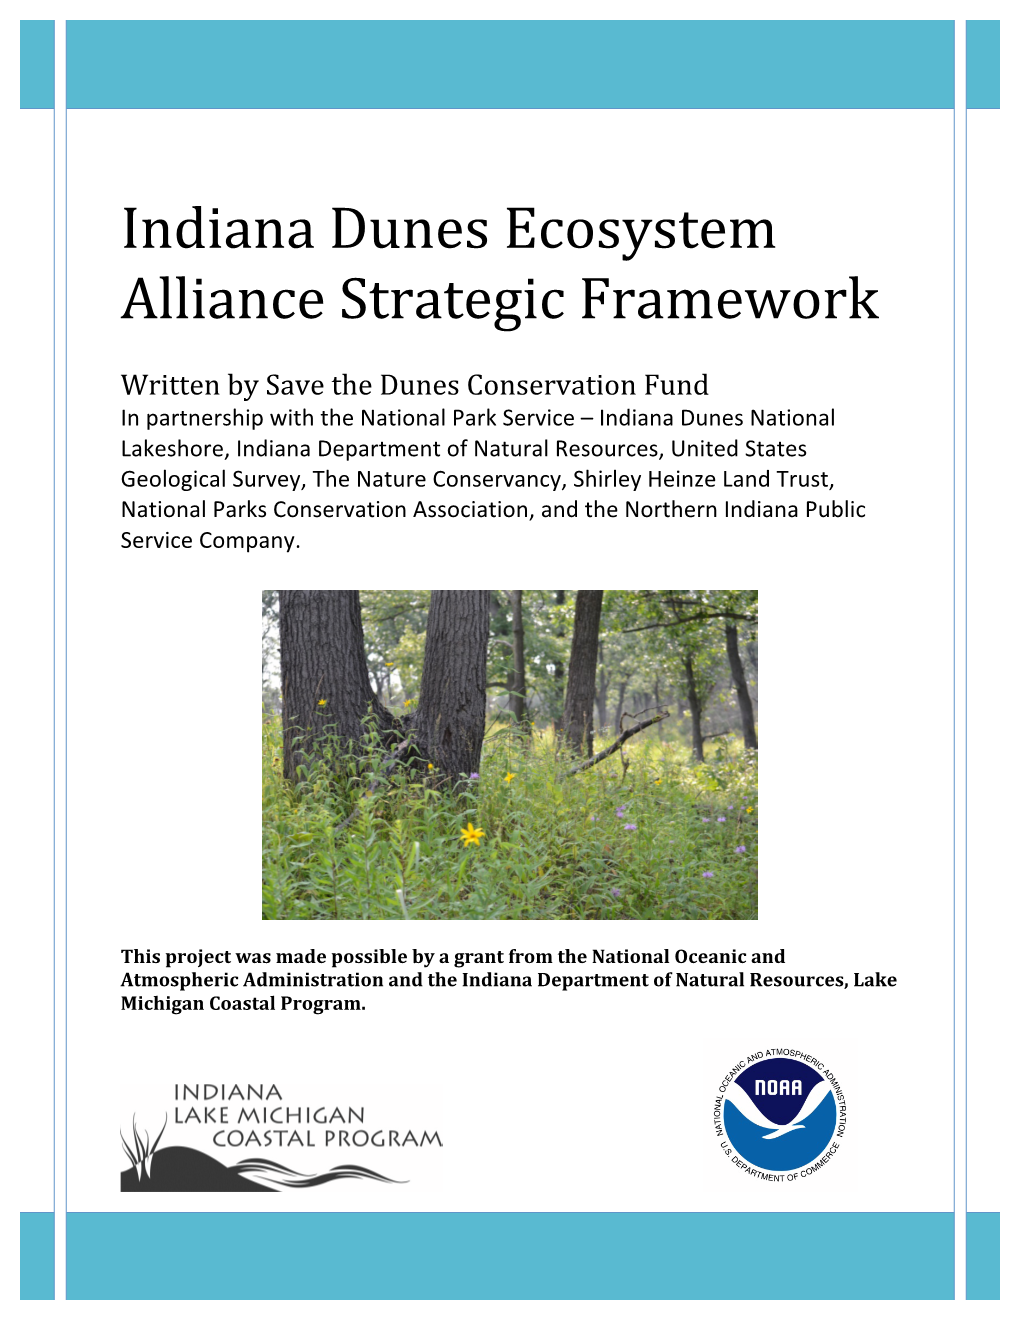 Indiana Dunes Ecosystem Alliance Framework